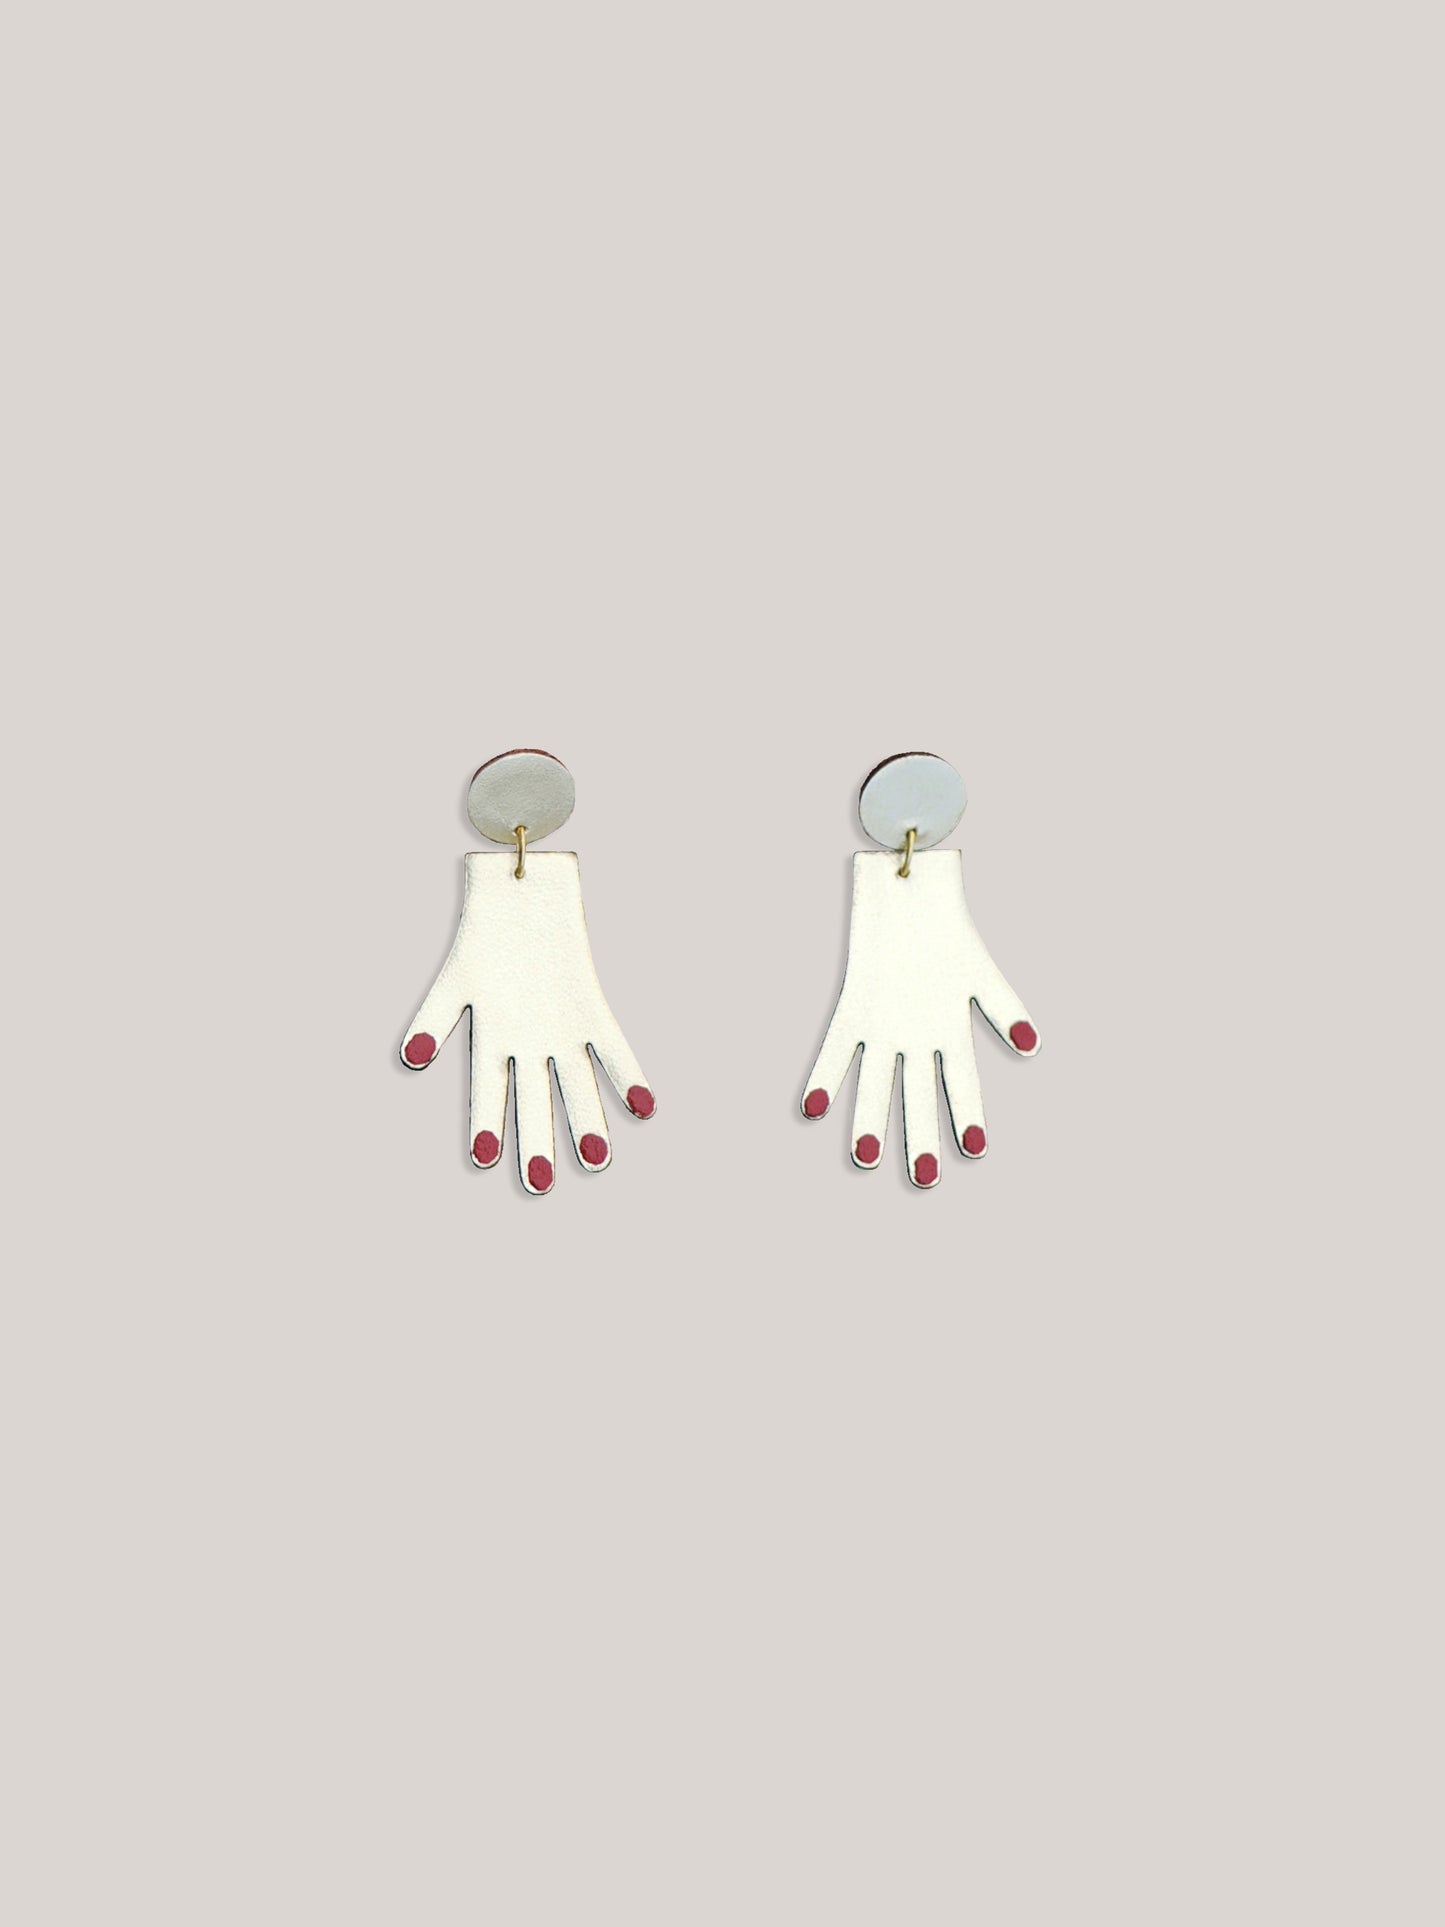 Hand earrings